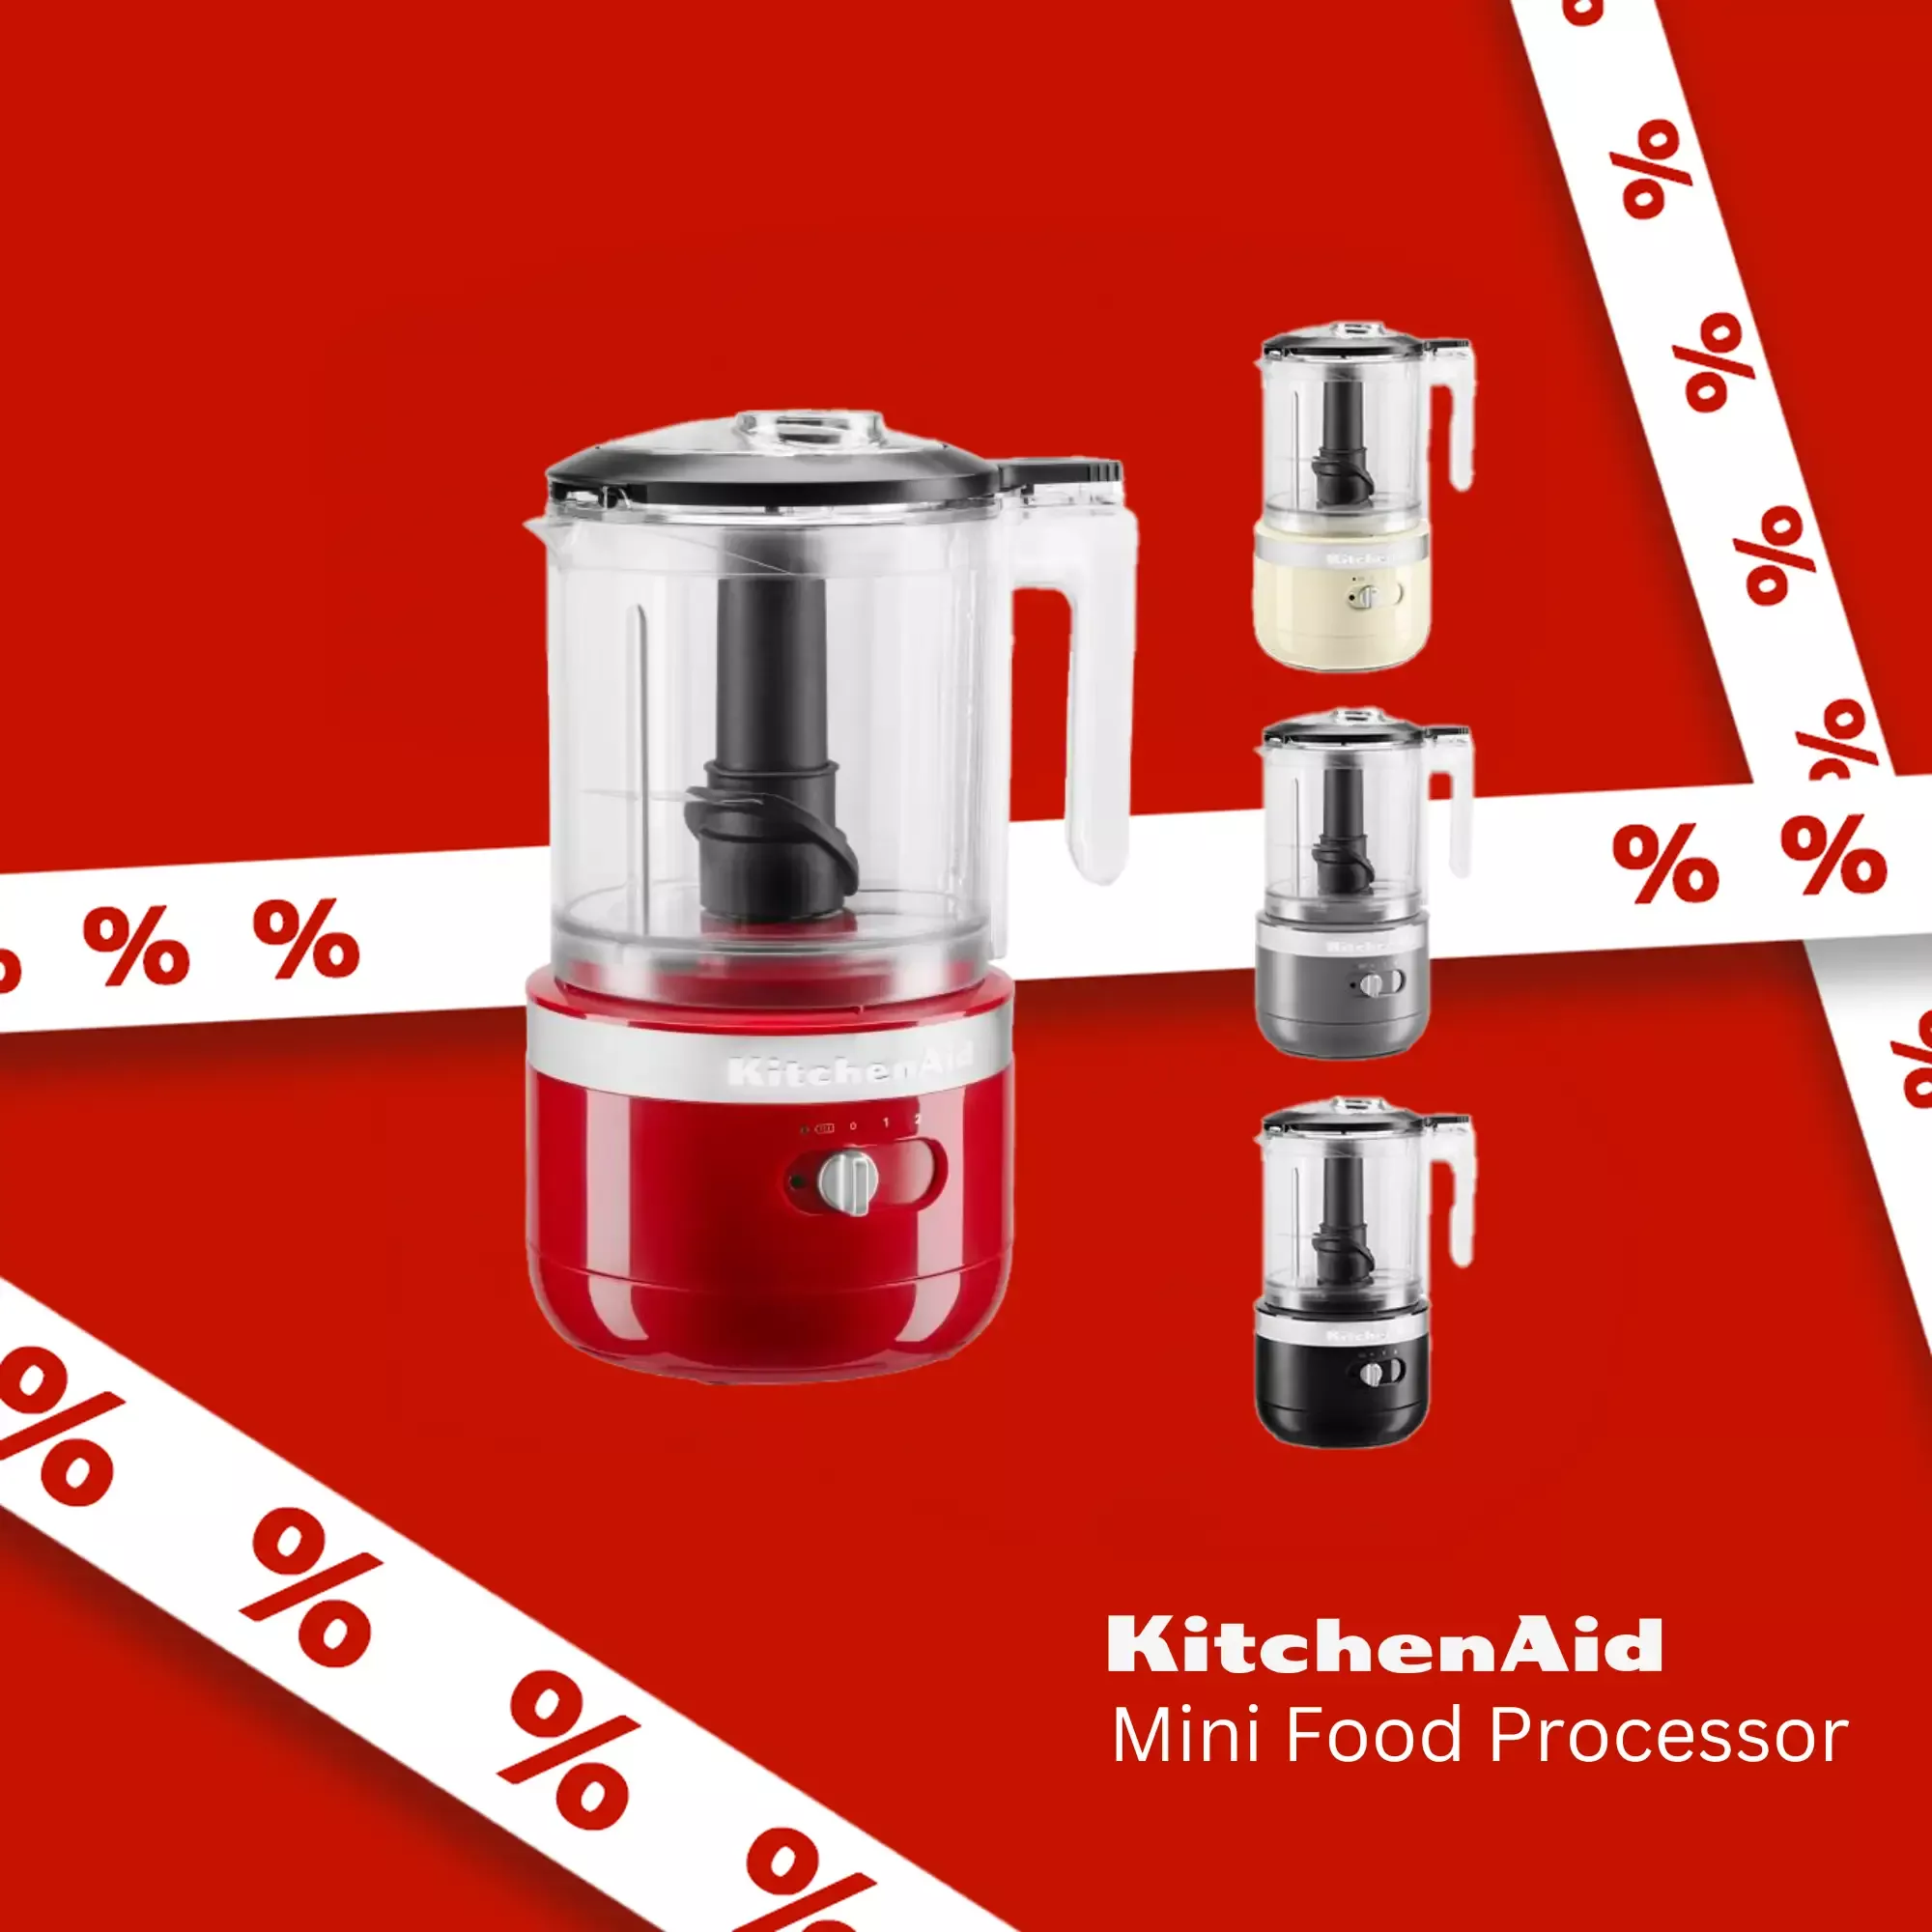 KitchenAid Mini Food Processor